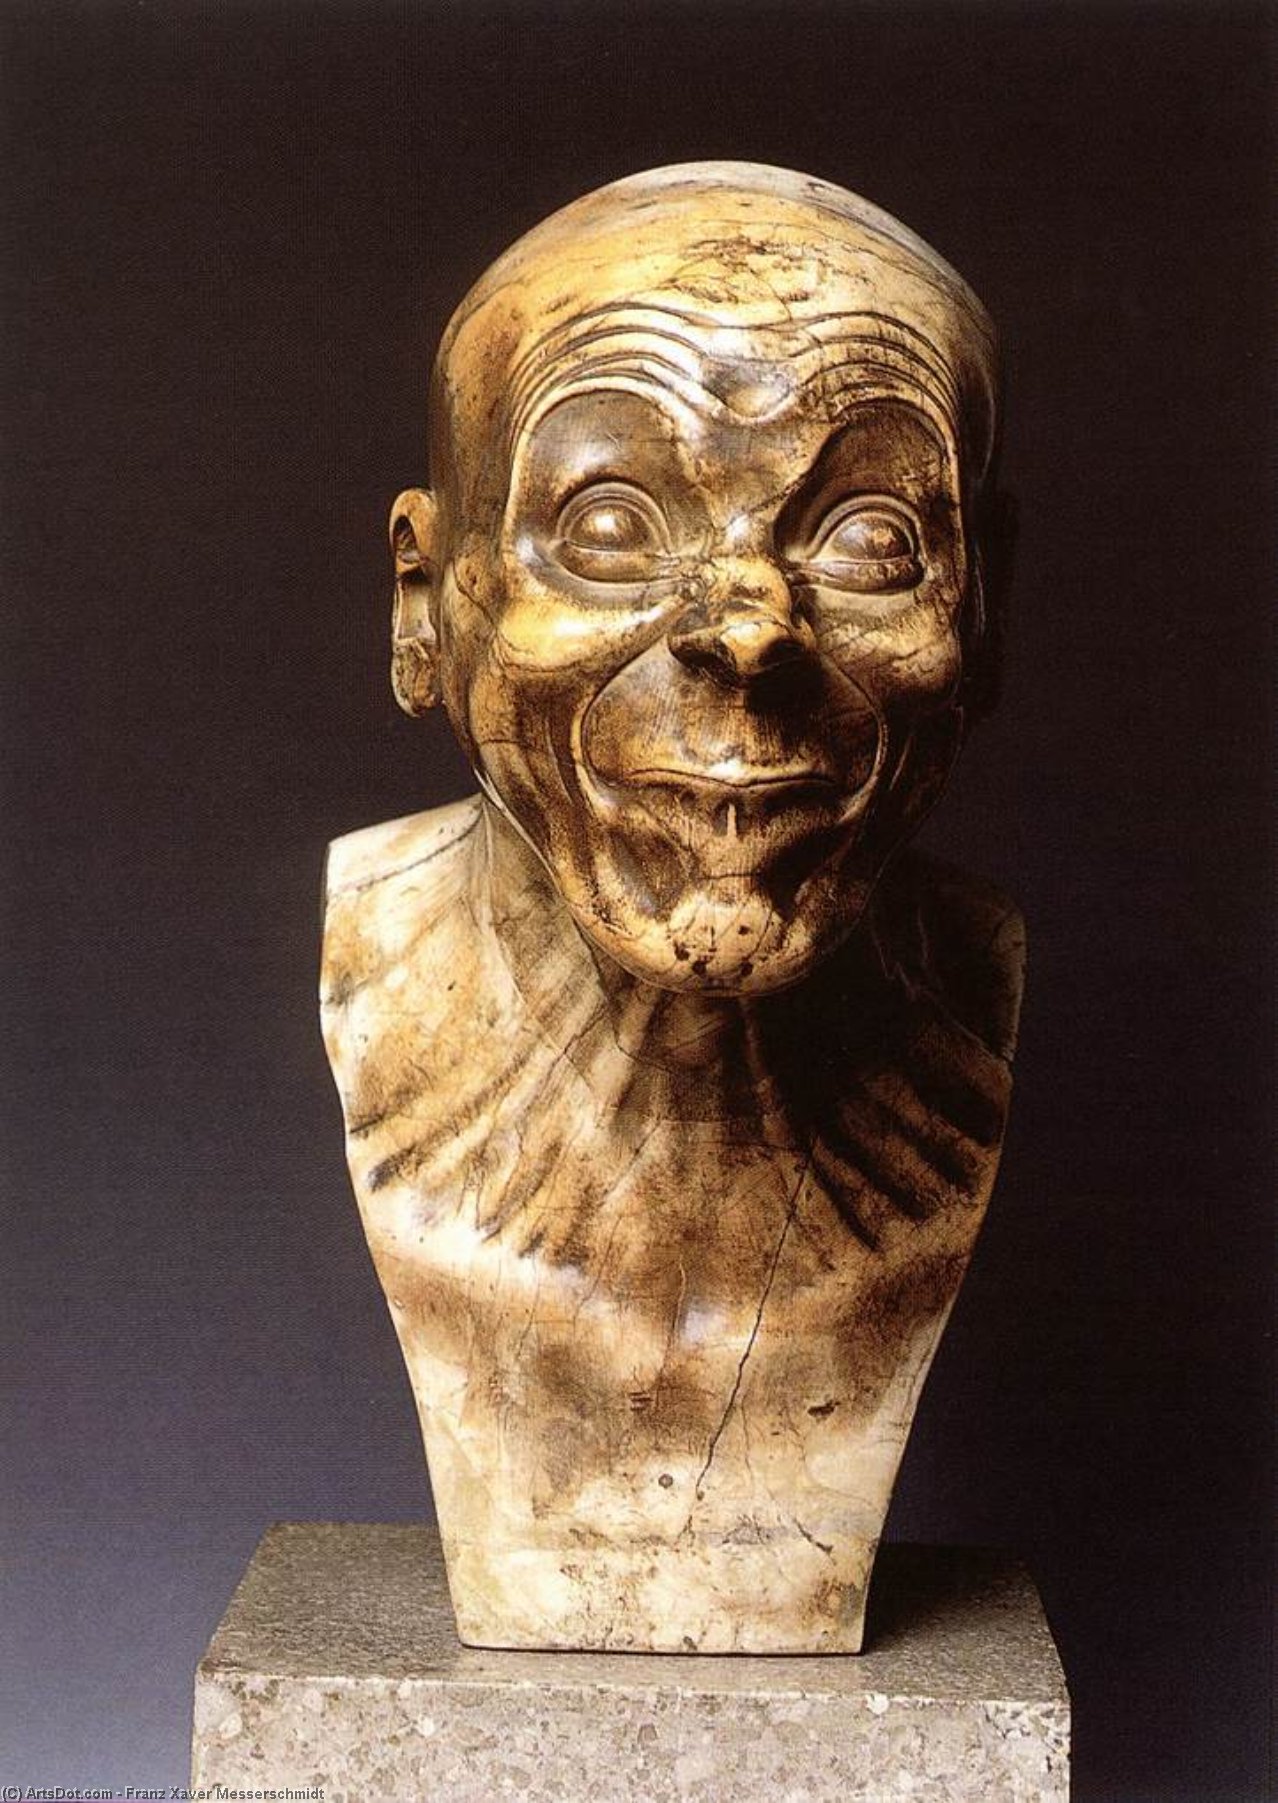 WikiOO.org - Encyclopedia of Fine Arts - Lukisan, Artwork Franz Xaver Messerschmidt - Character Head: The Lecher